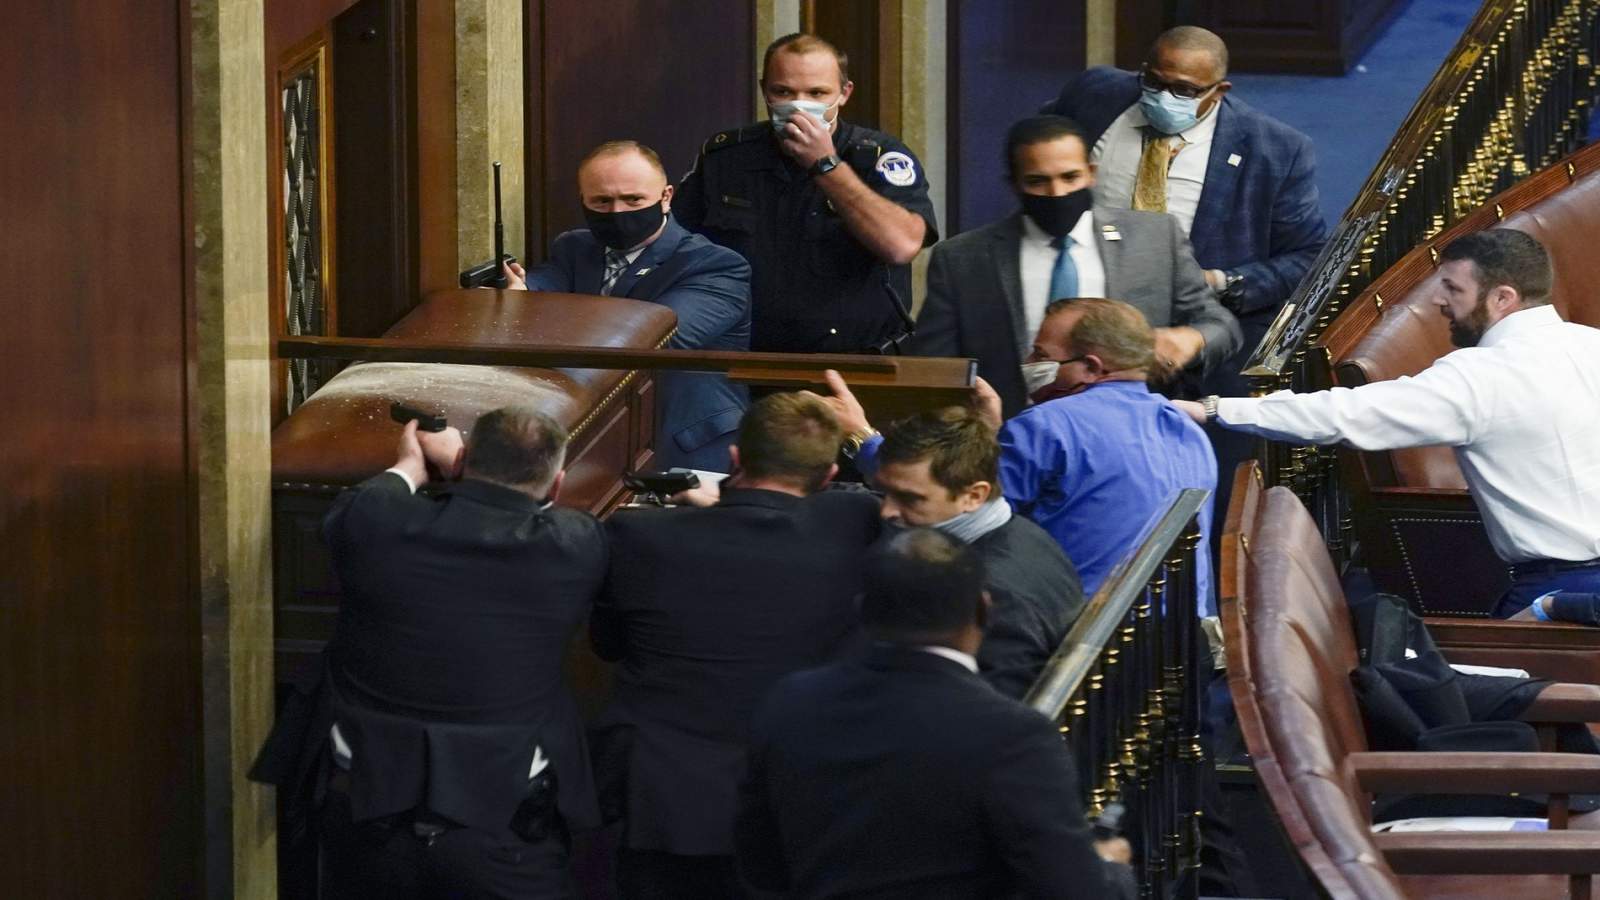 ‘Un-American’: US Rep. Nehls recalls exchange he had with mob storming Capitol as he helped barricade House doors